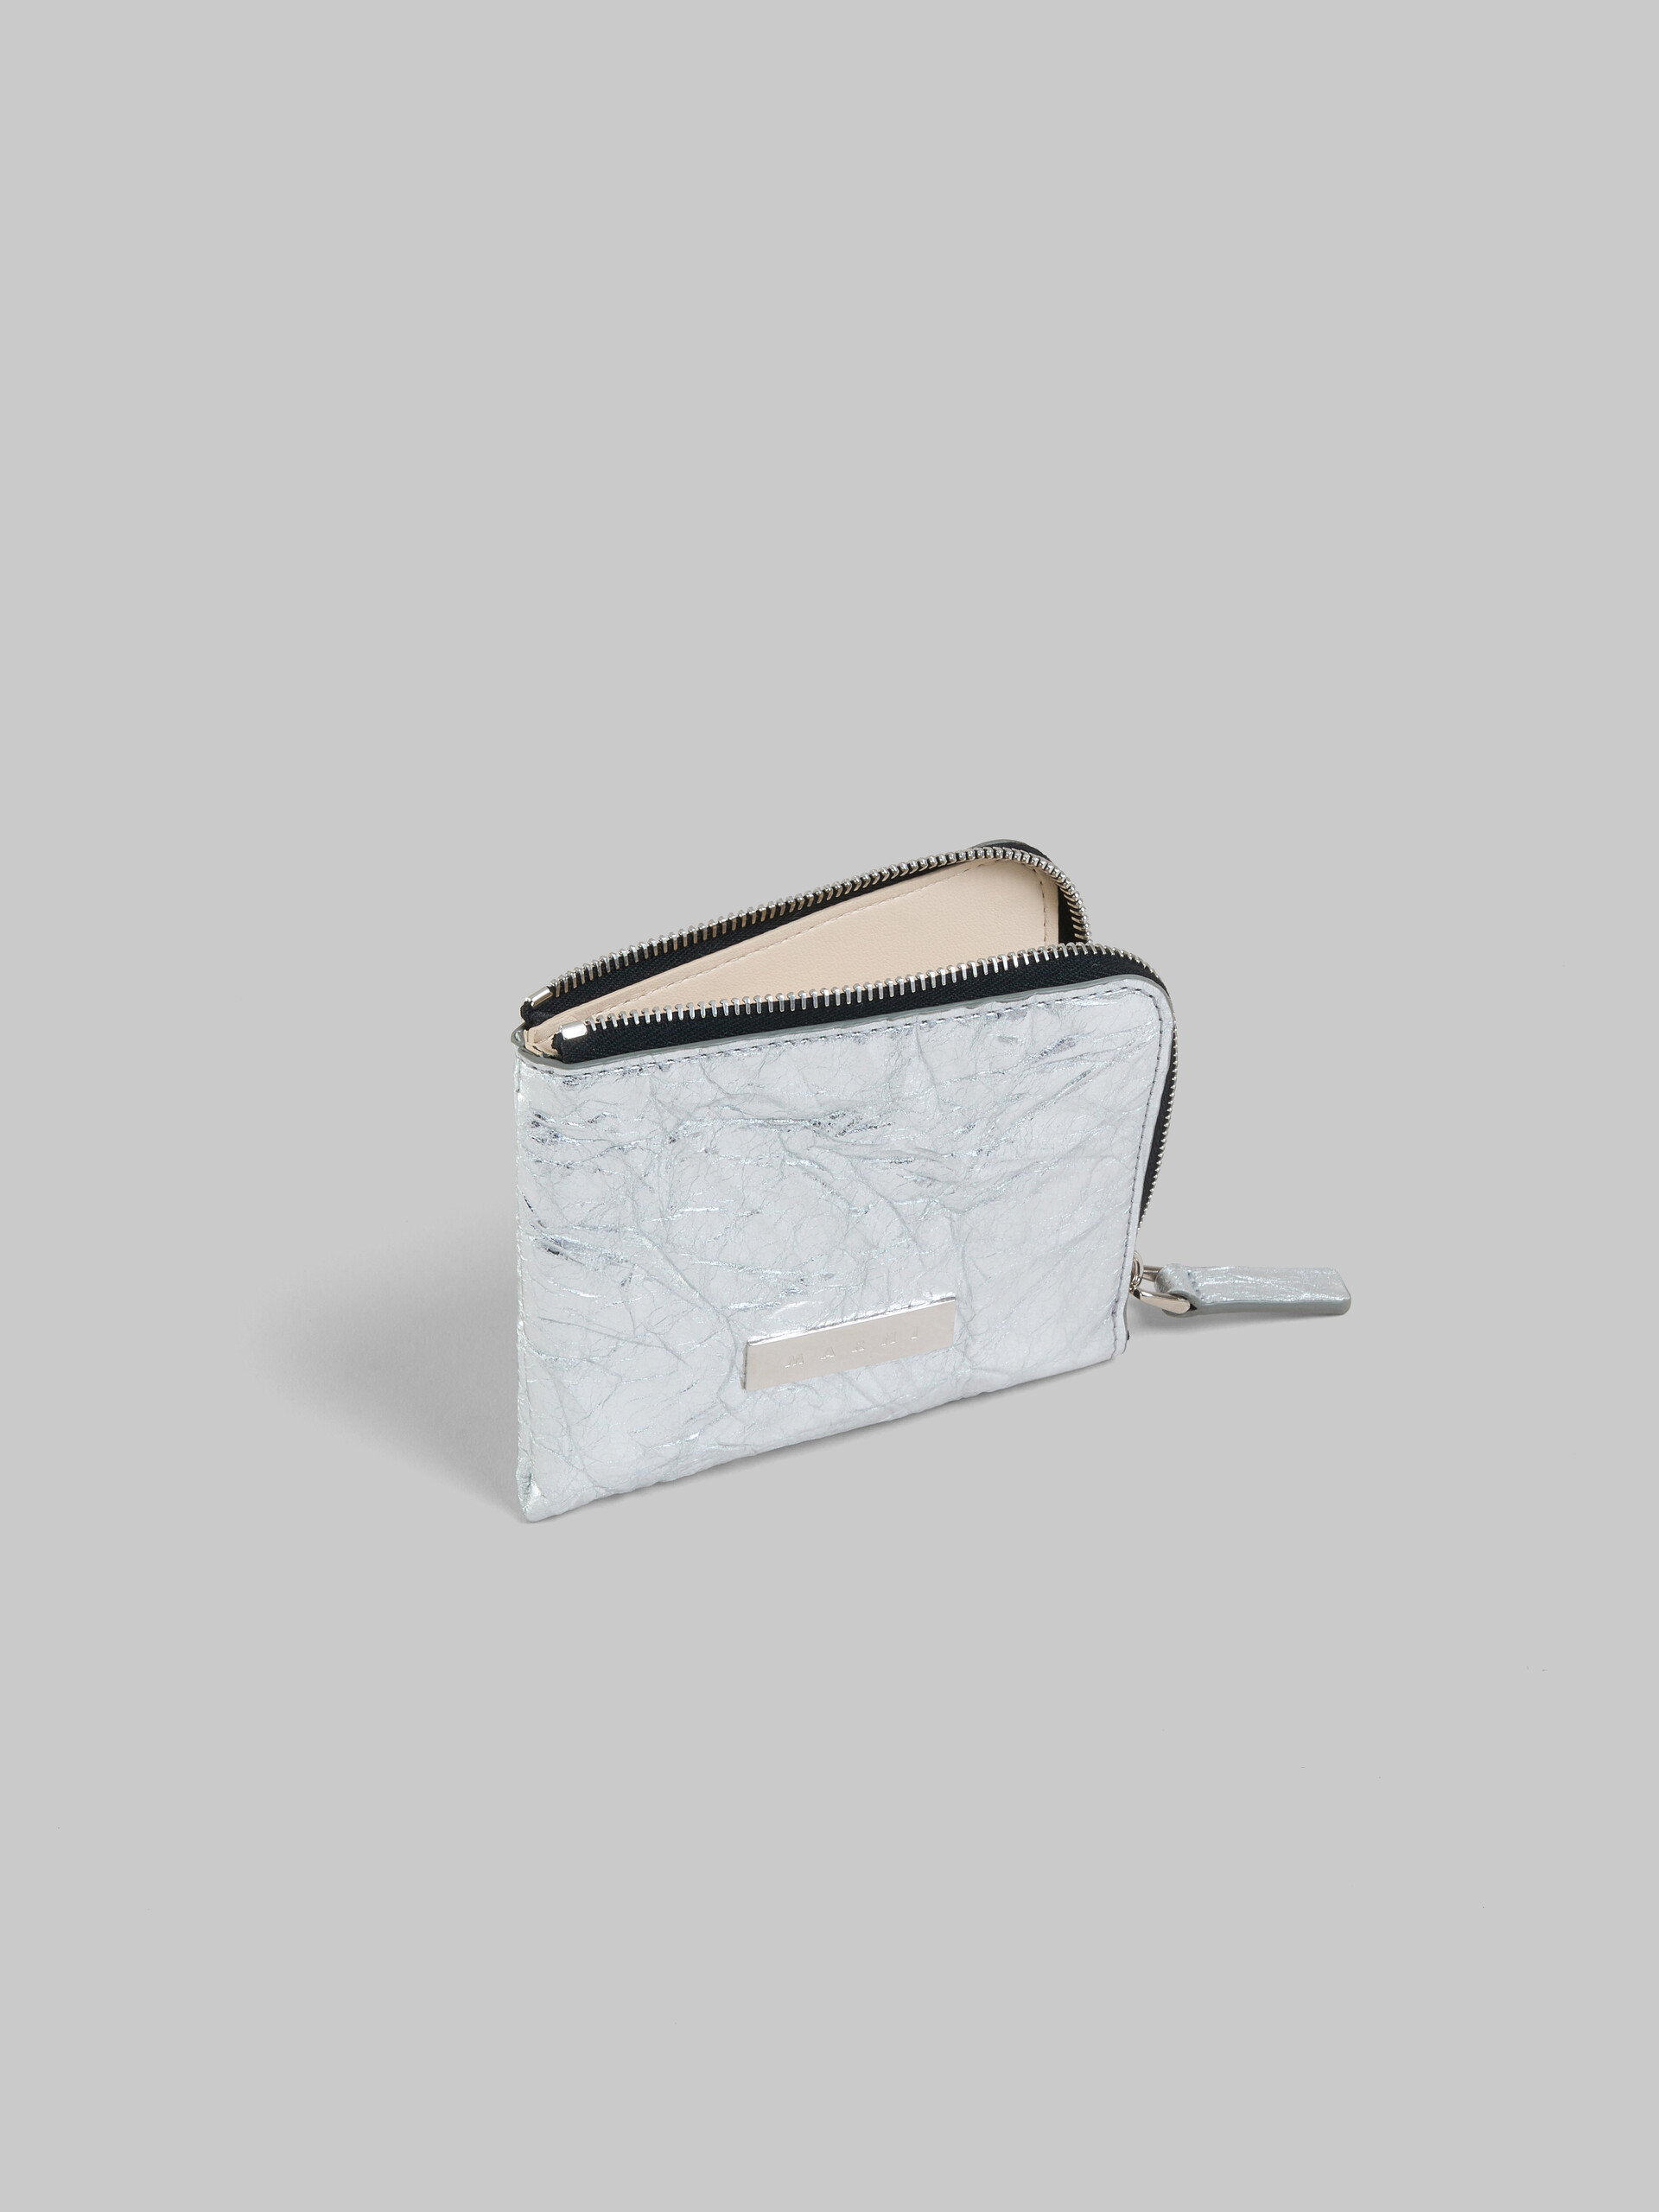 Brieftasche Prisma mit Rundumreißverschluss aus Leder in Silber - Brieftaschen - Image 2